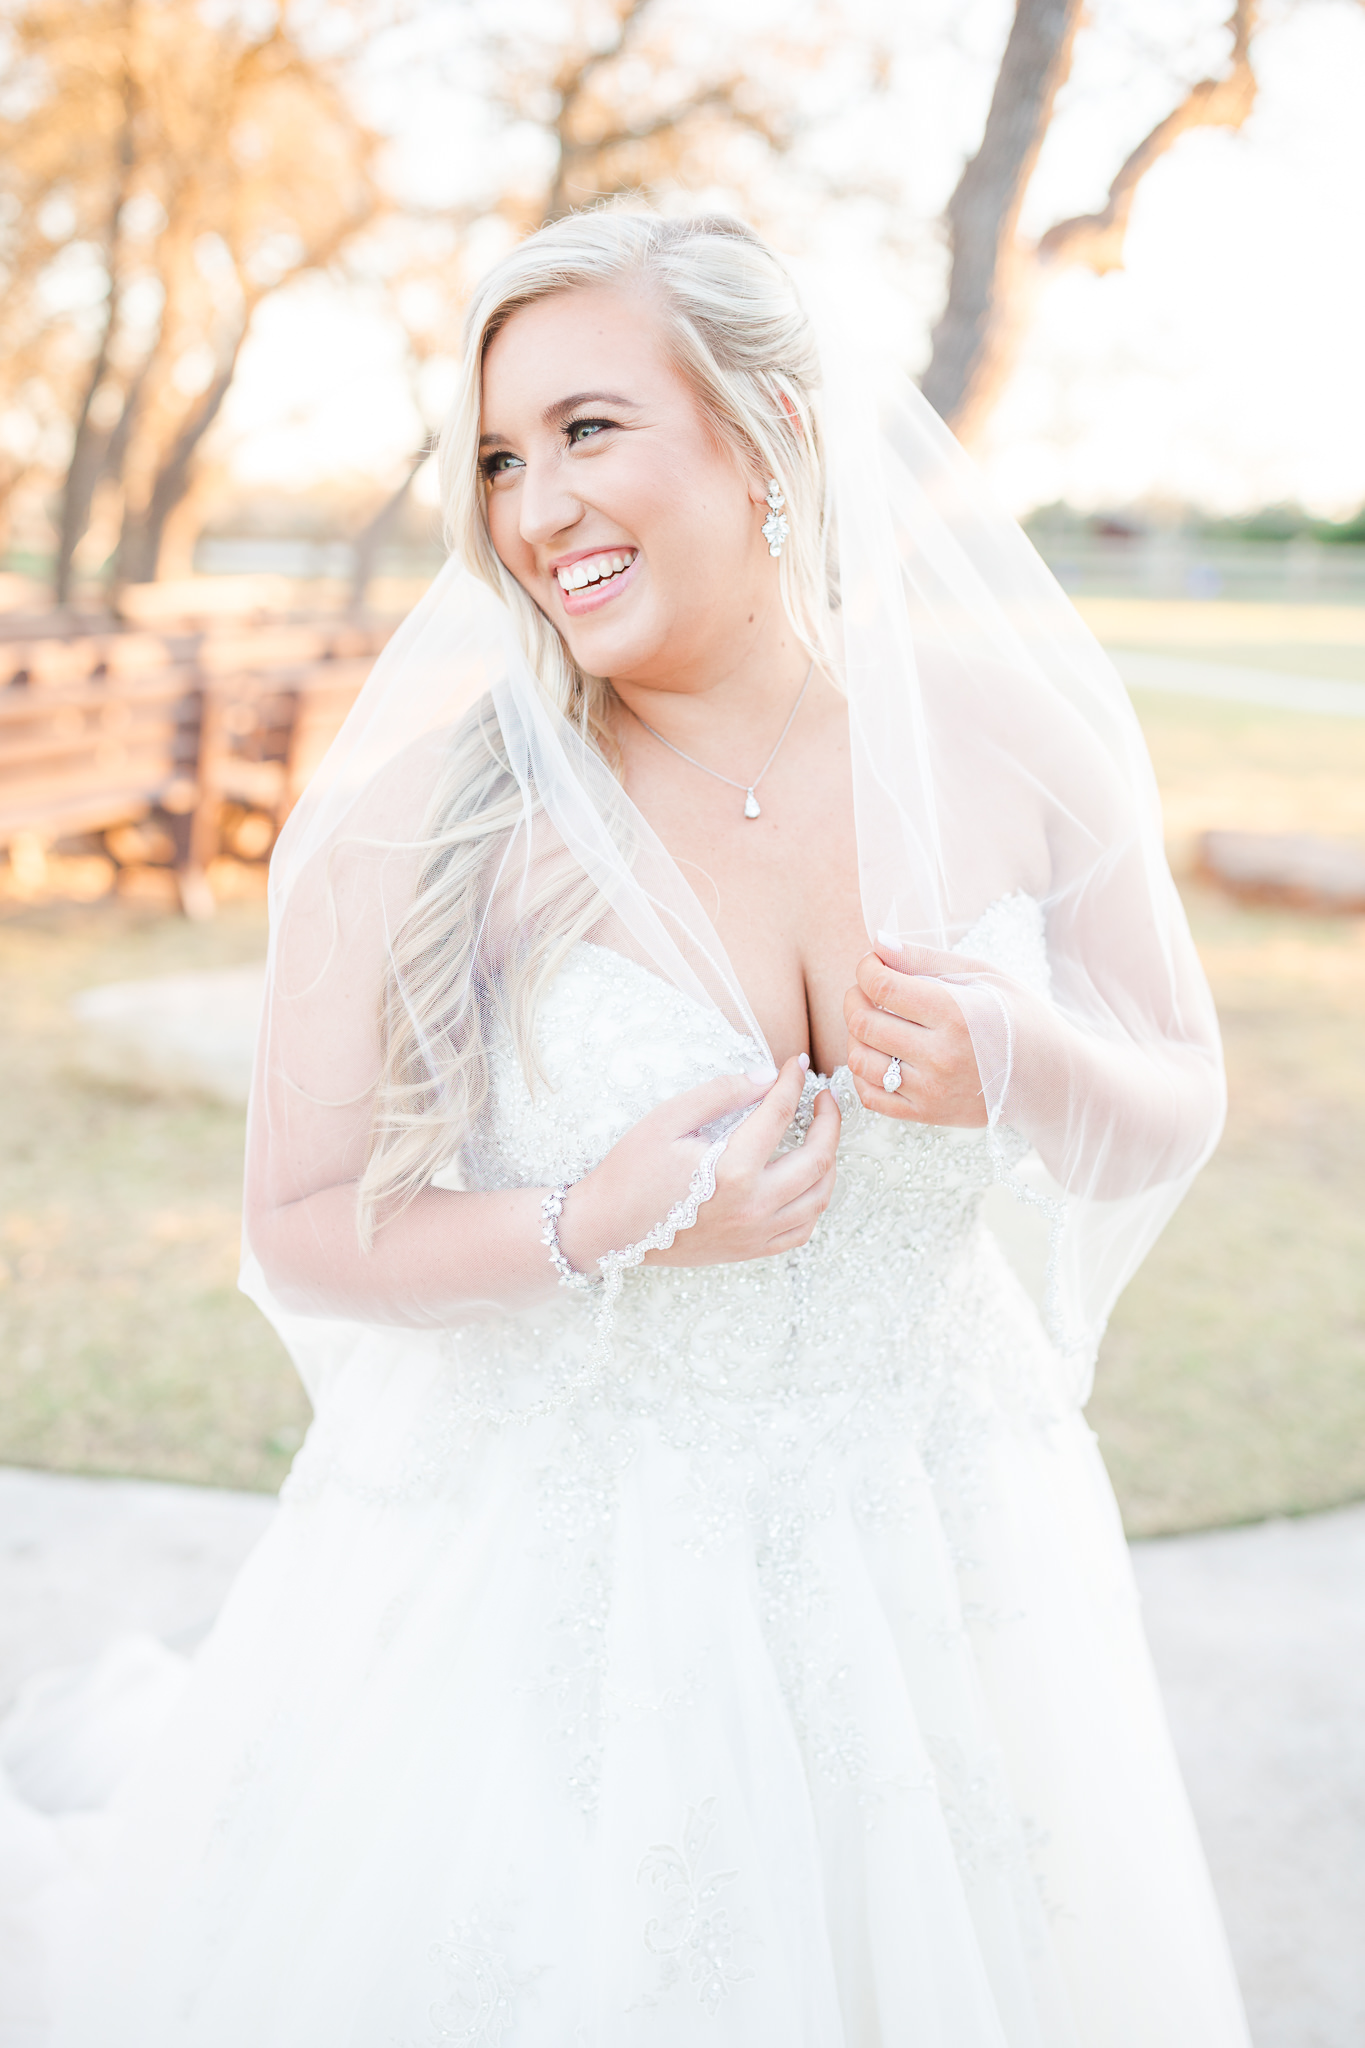 Bridal Session at Firefly Farm in Wimberley, TX by Dawn Elizabeth Studios, San Antonio Wedding Photographer